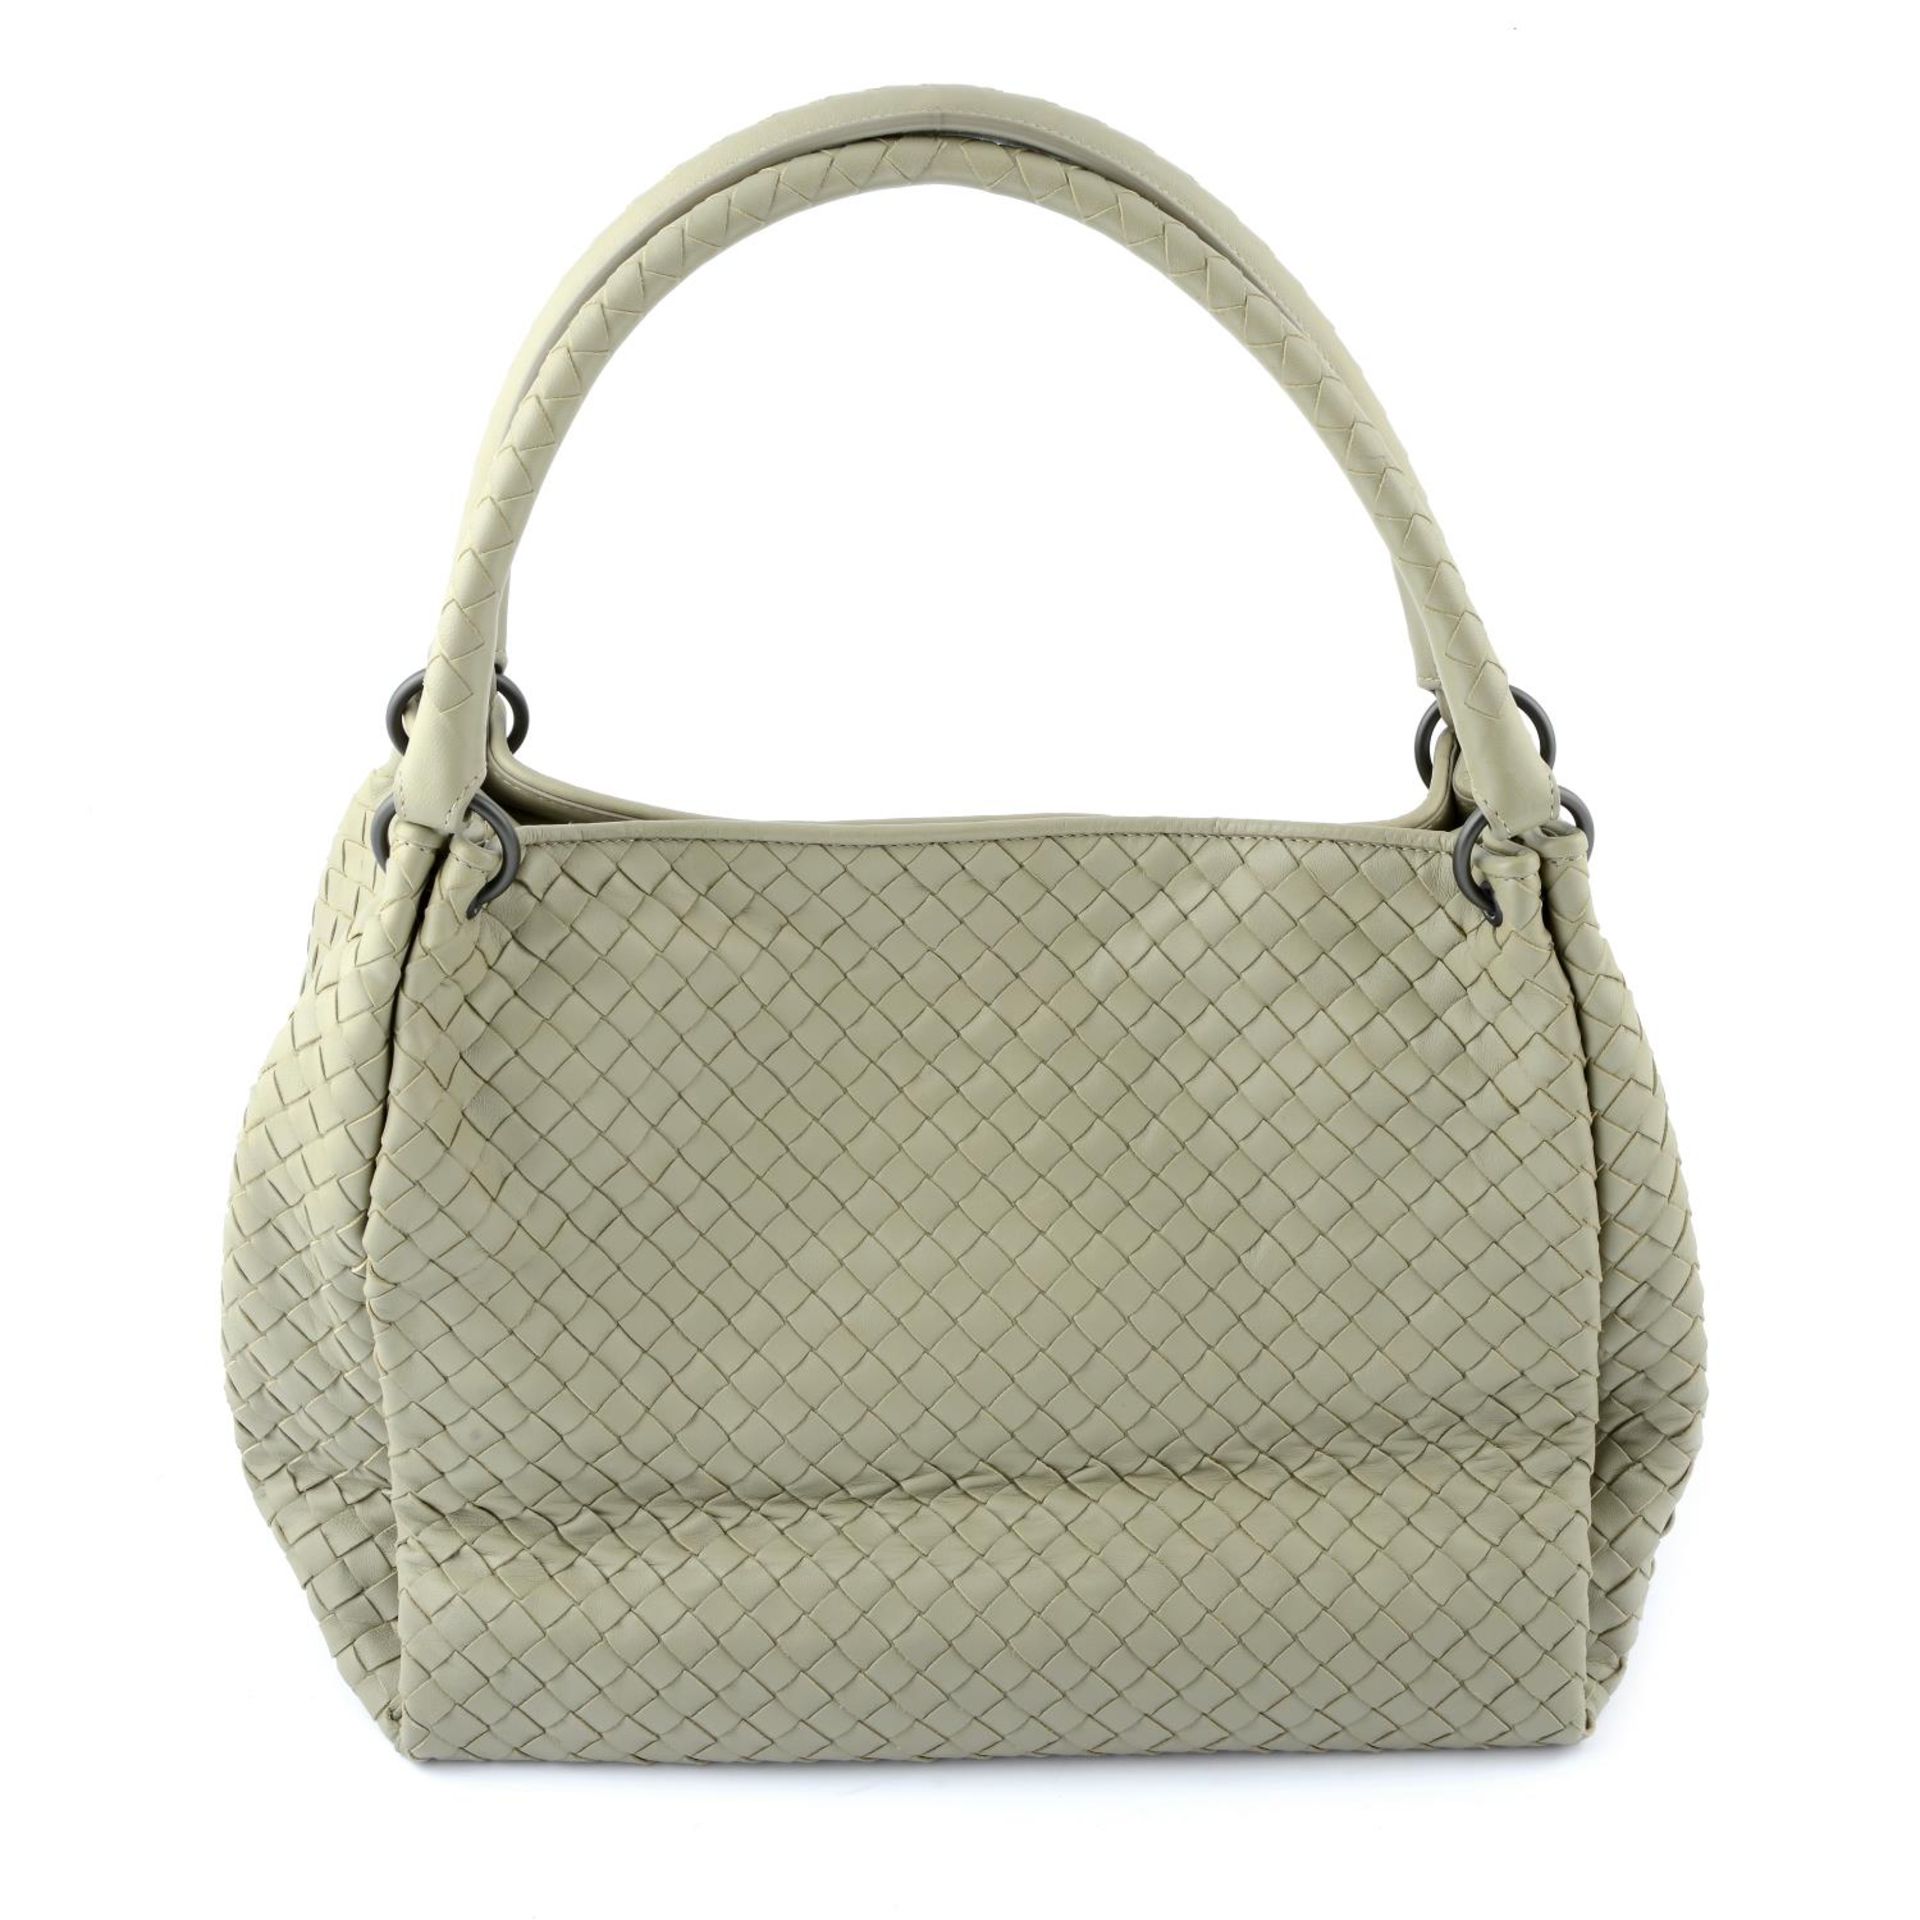 BOTTEGA VENETA - an Intrecciato top handle handbag. - Bild 2 aus 5